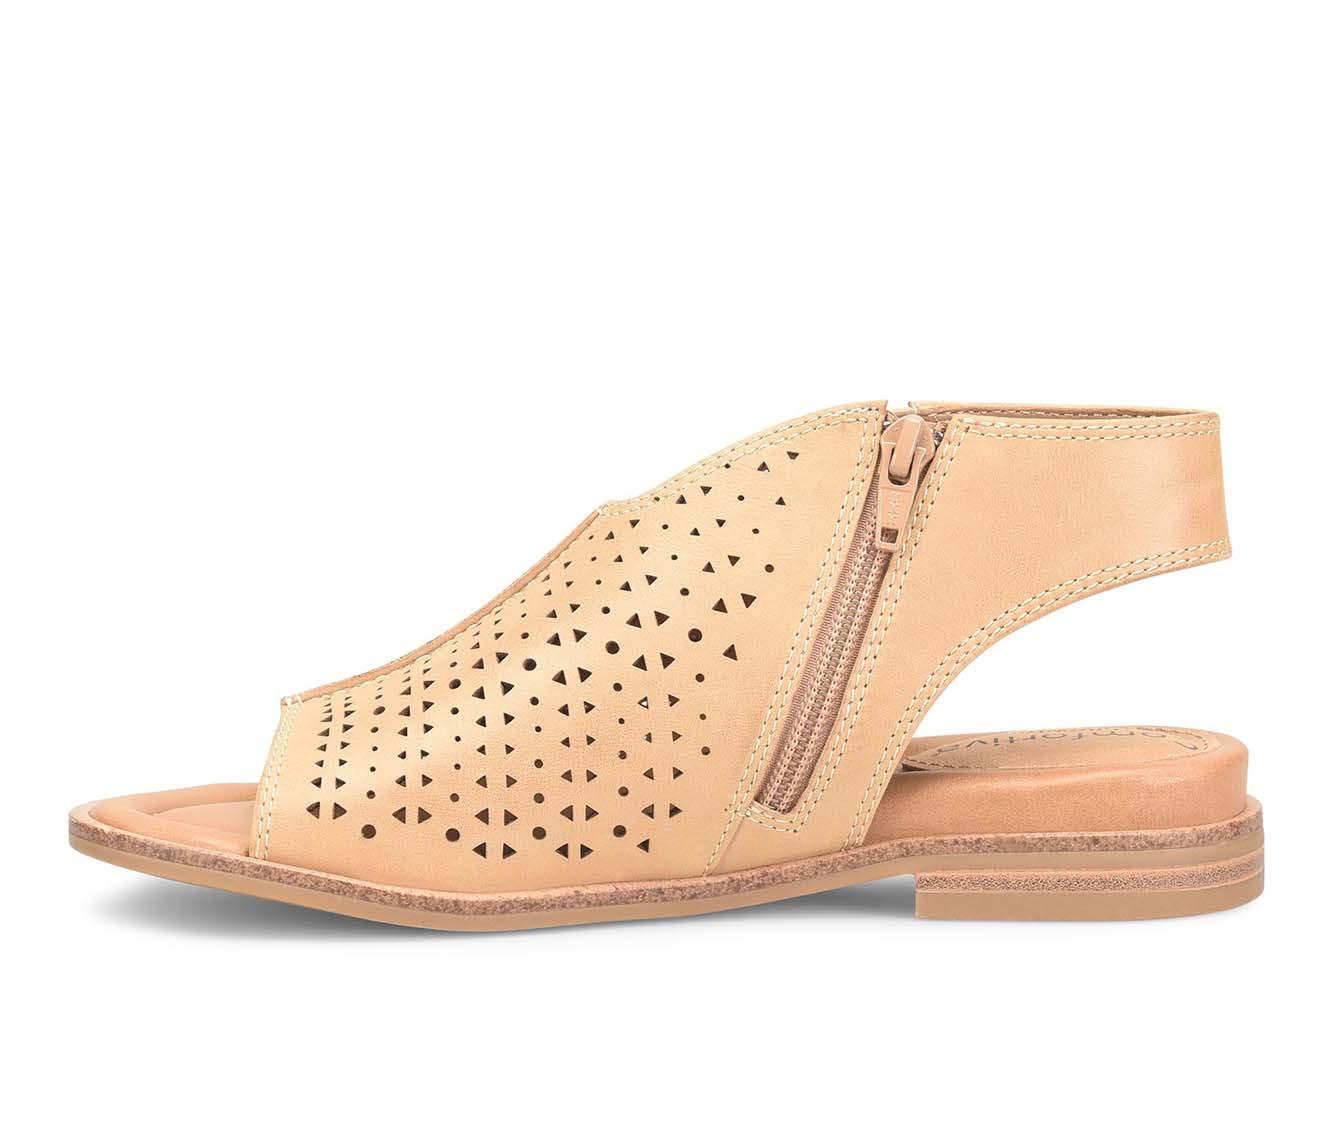 Women's Comfortiva Delsie Sandals